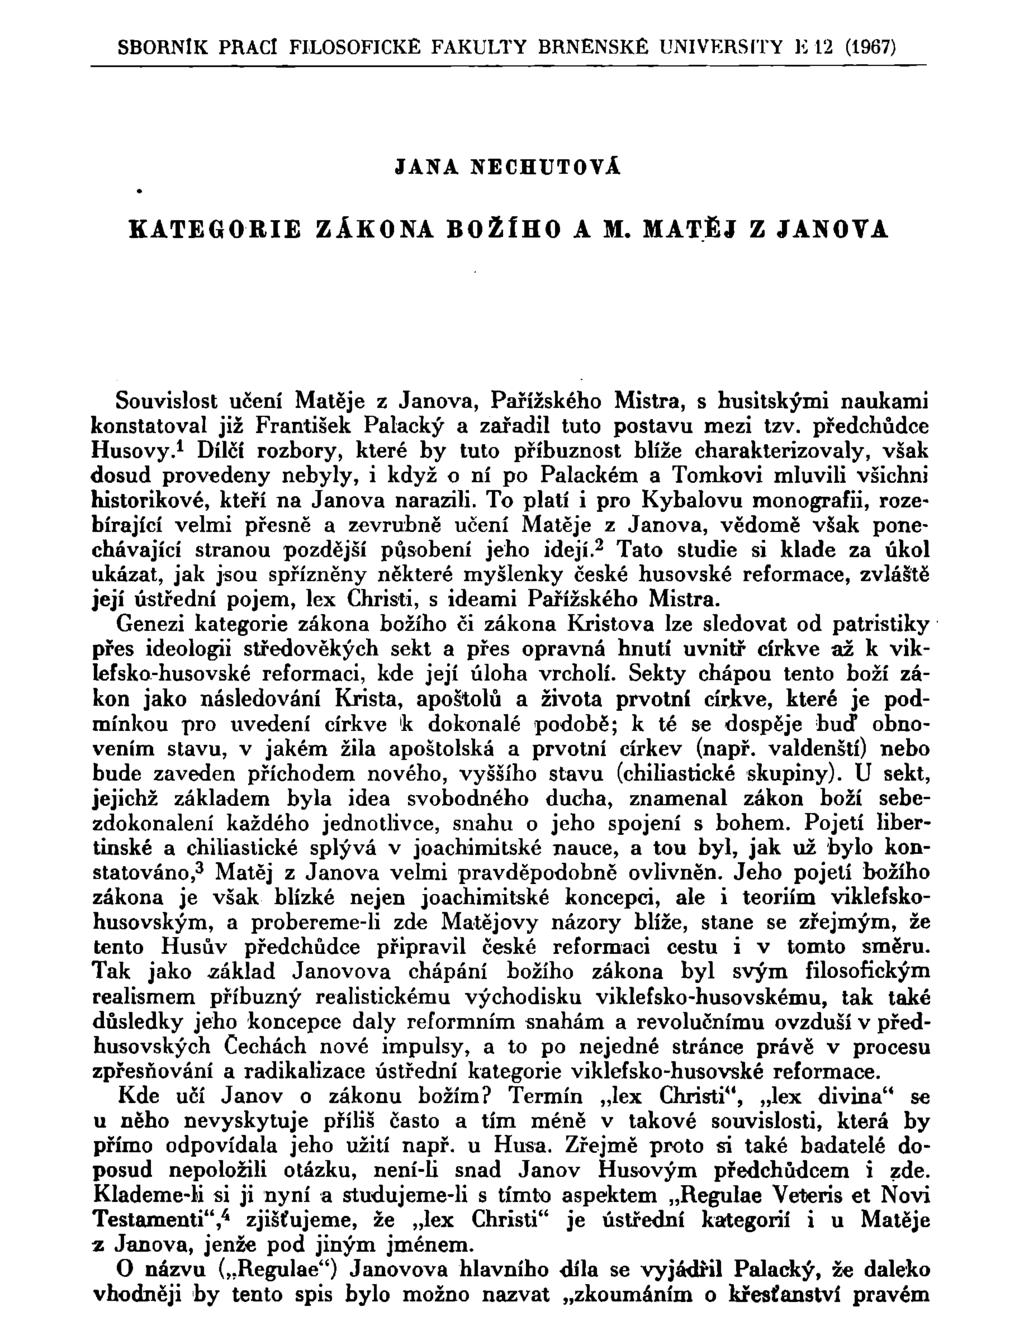 SBORNÍK PRACÍ FILOSOFICKÉ FAKULTY BRNĚNSKÉ UNIVERSITY li 12 (1967) JANA NECHUŤOVÁ KATEGORIE ZÁKONA BOŽÍHO A M.